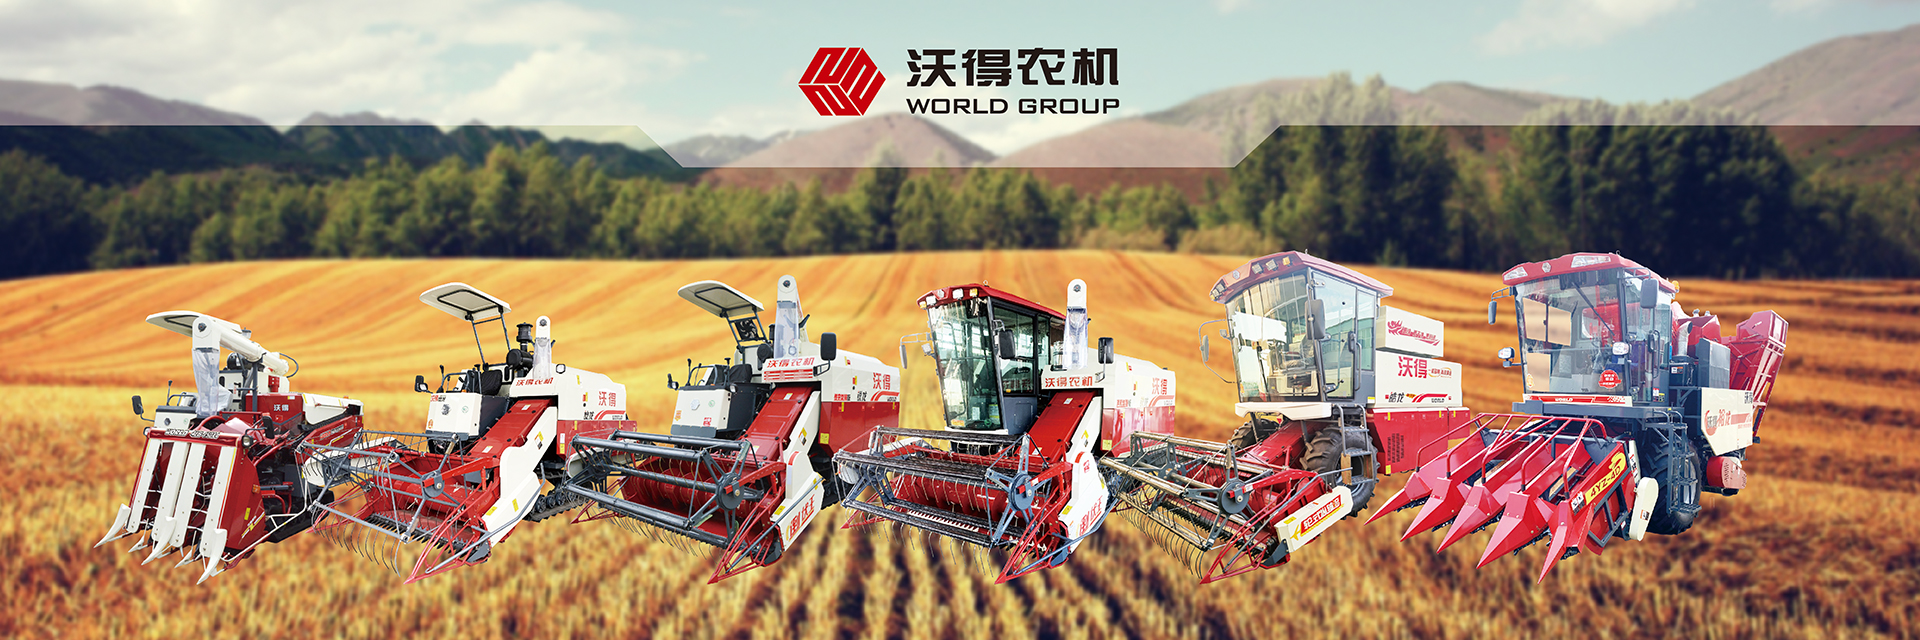 Jielong combine harvester